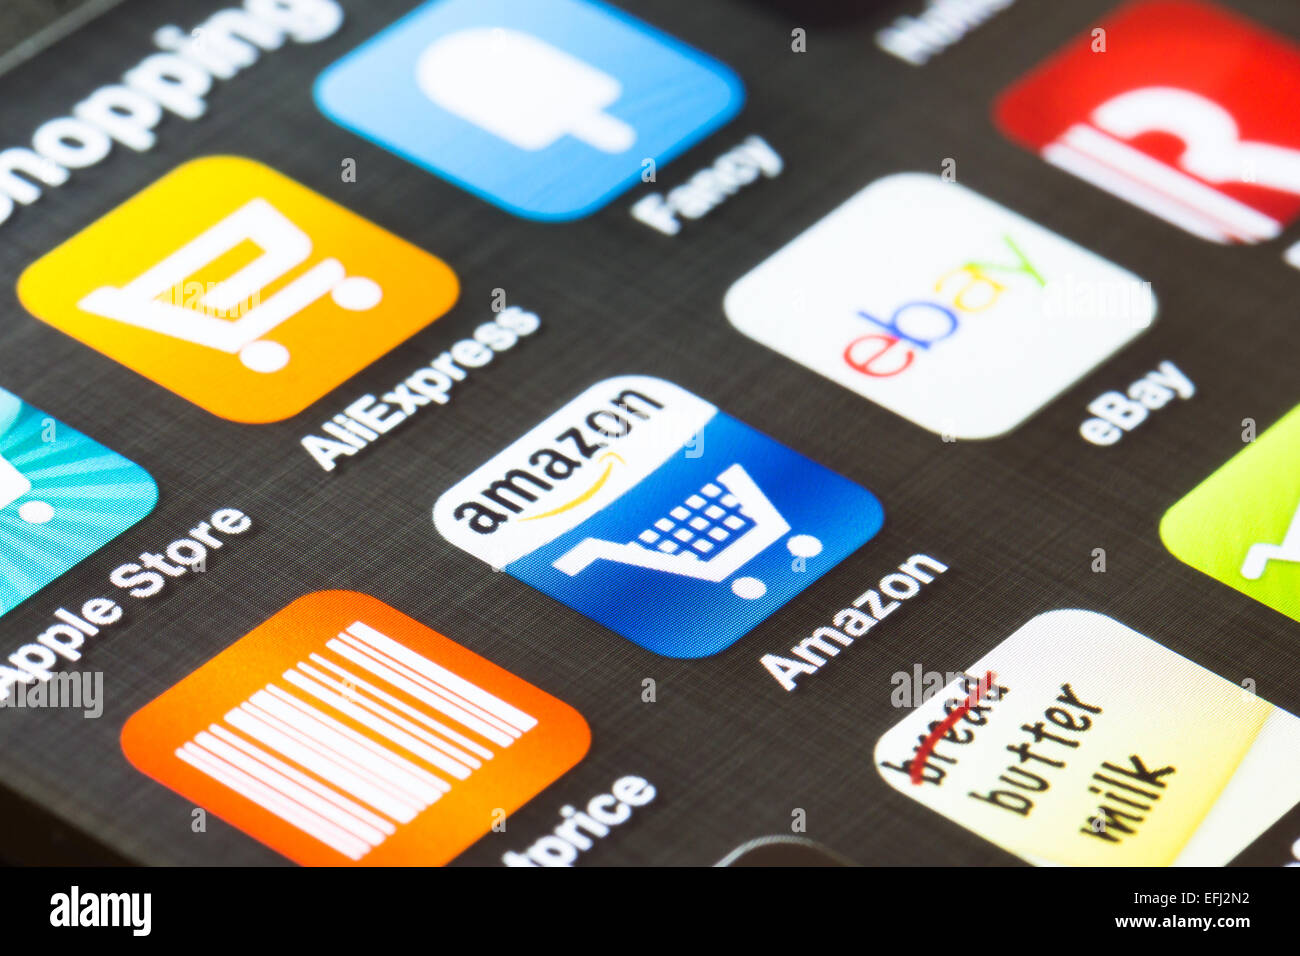 LONDON, UK - 5. Februar 2013: beliebte shopping-apps auf einem Smartphonebildschirm angezeigt. Stockfoto